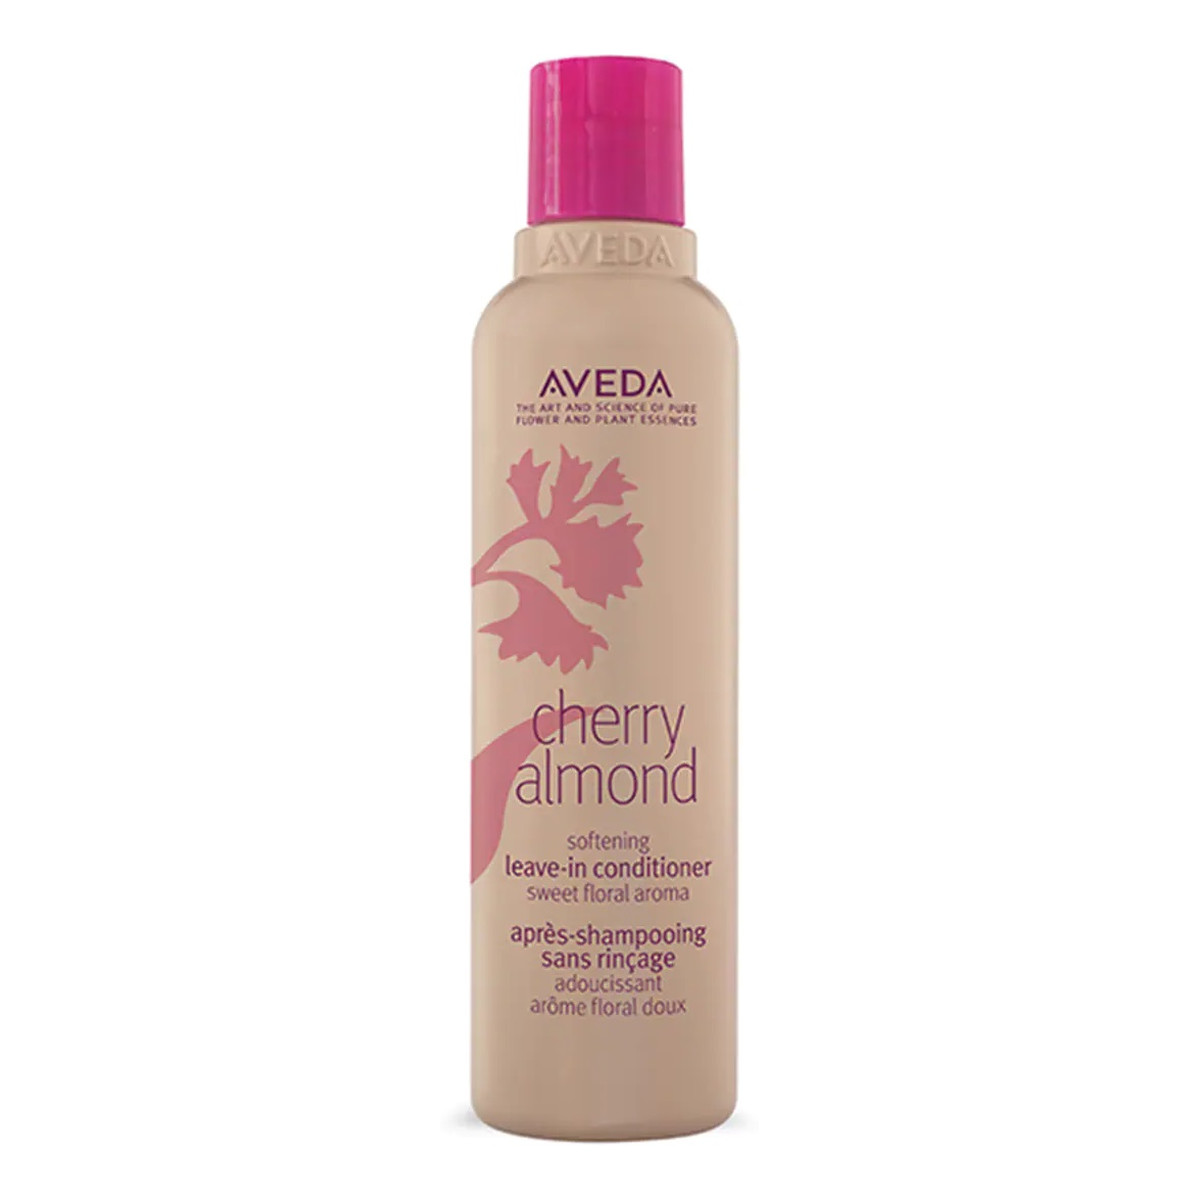 Aveda Cherry almond softening leave-in conditioner zmiękczająca odżywka do włosów w spray'u 200ml